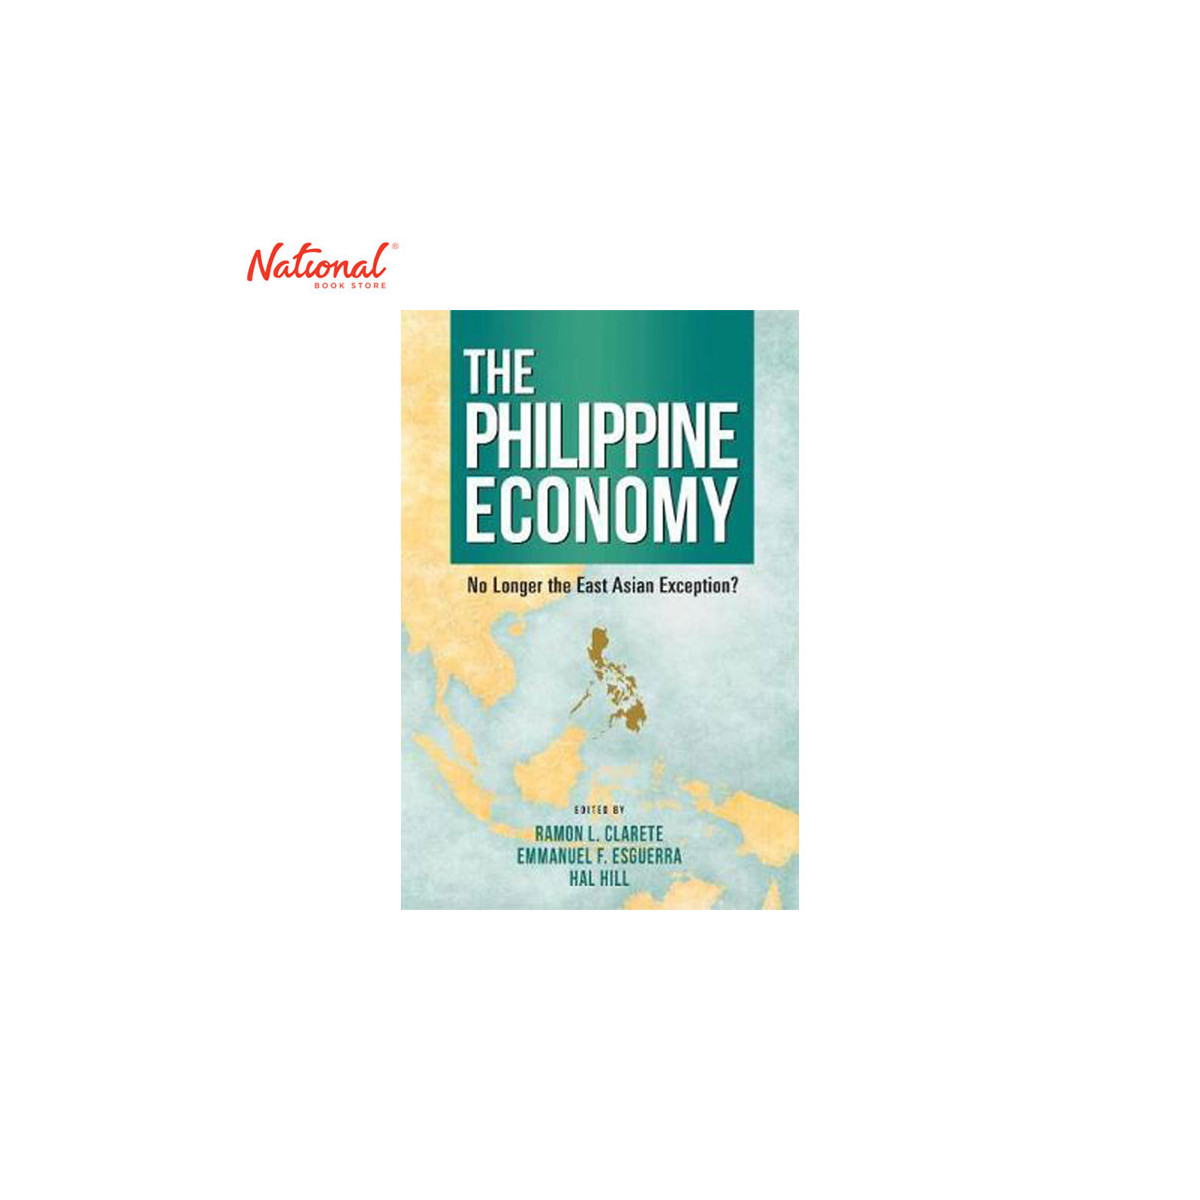 THE PHILIPPINE ECONOMY TRADE PAPERBACK